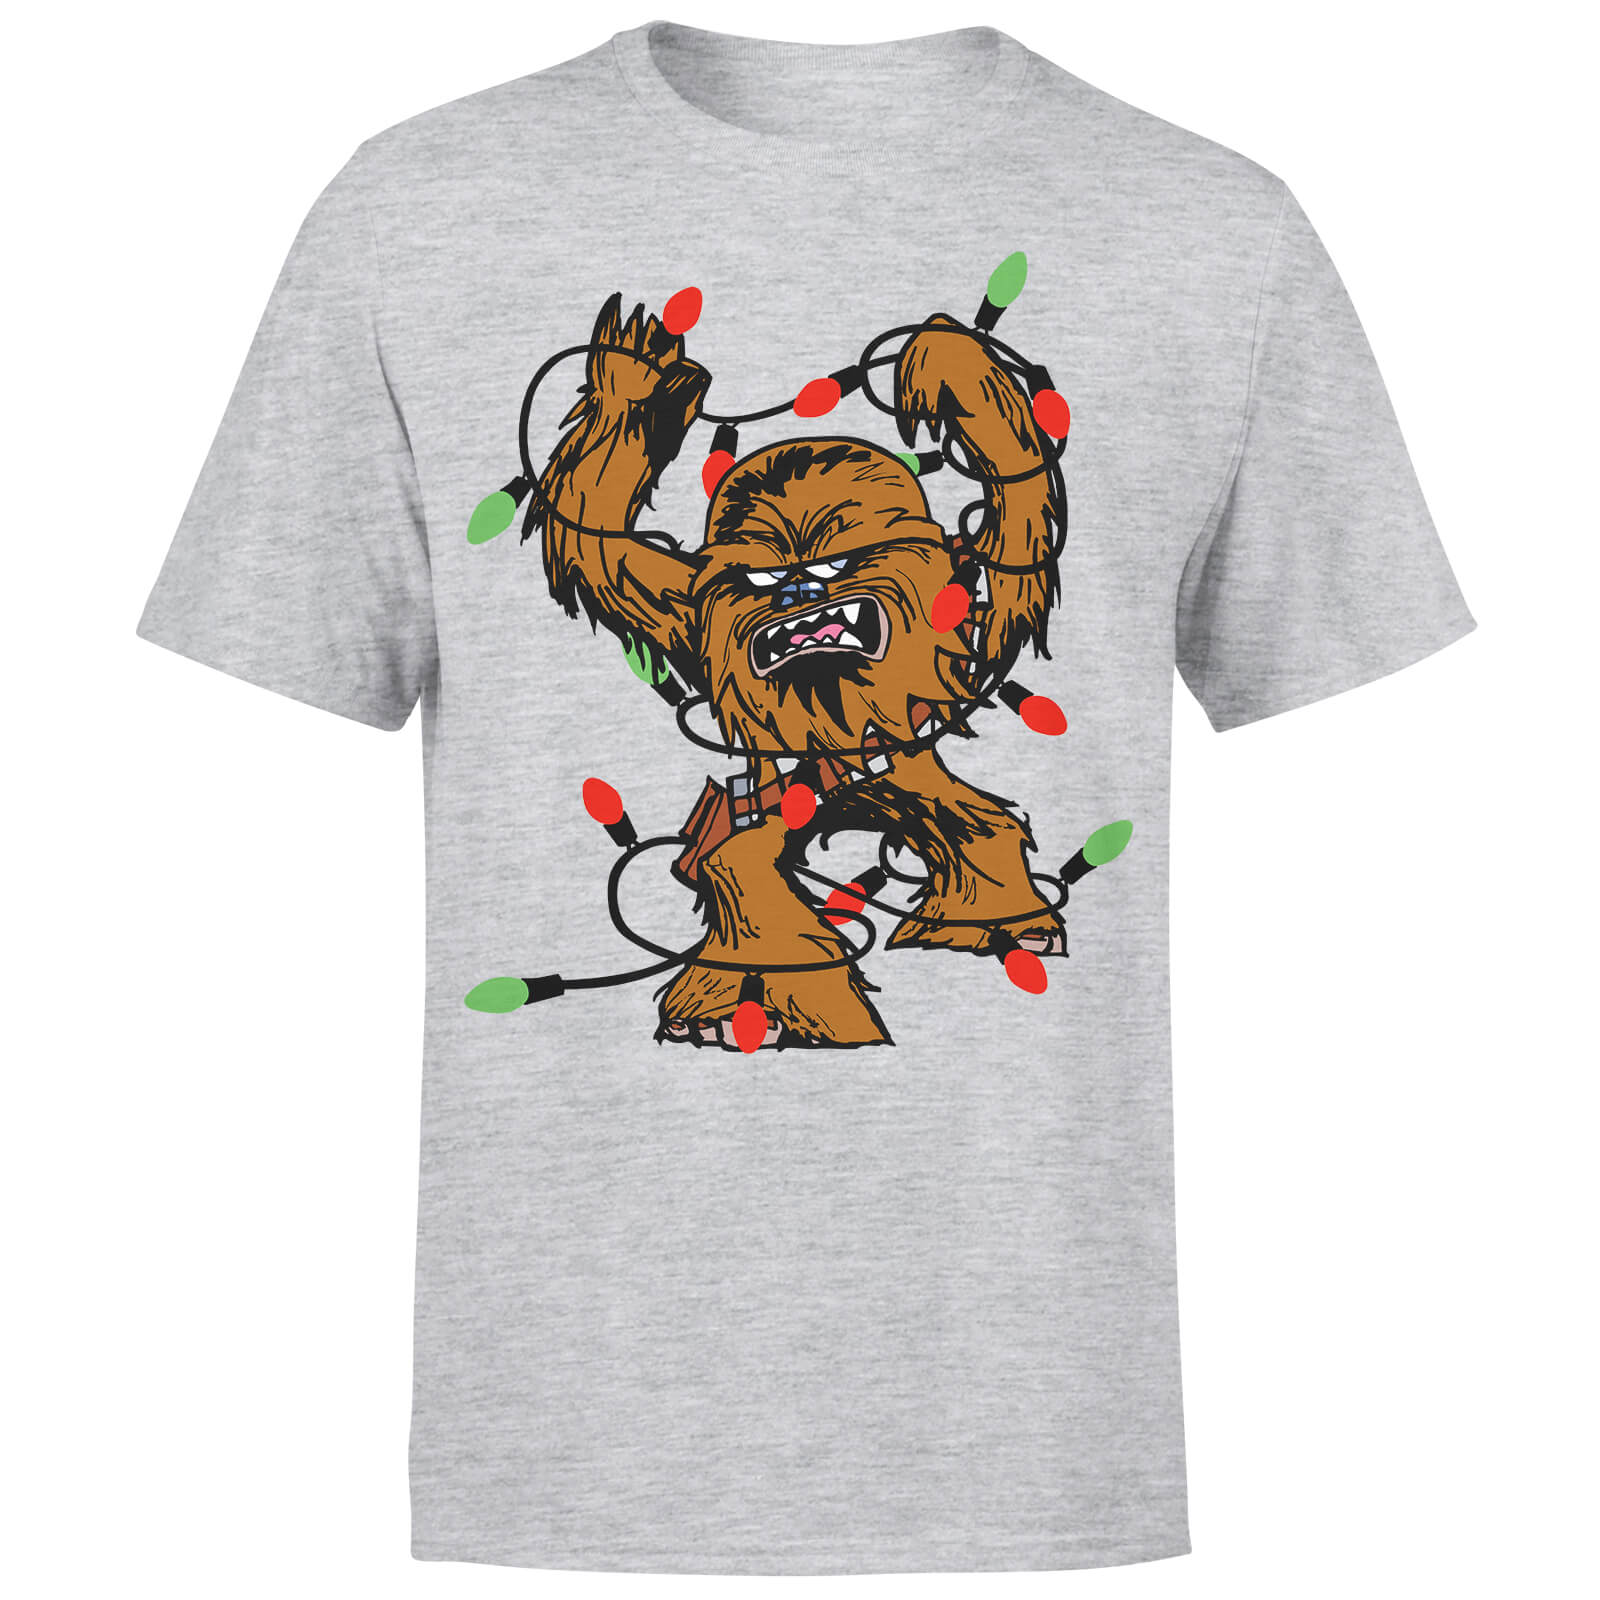 Camiseta Navidad Star Wars Chewbacca Luces de Navidad - Hombre/Mujer - Gris - XL